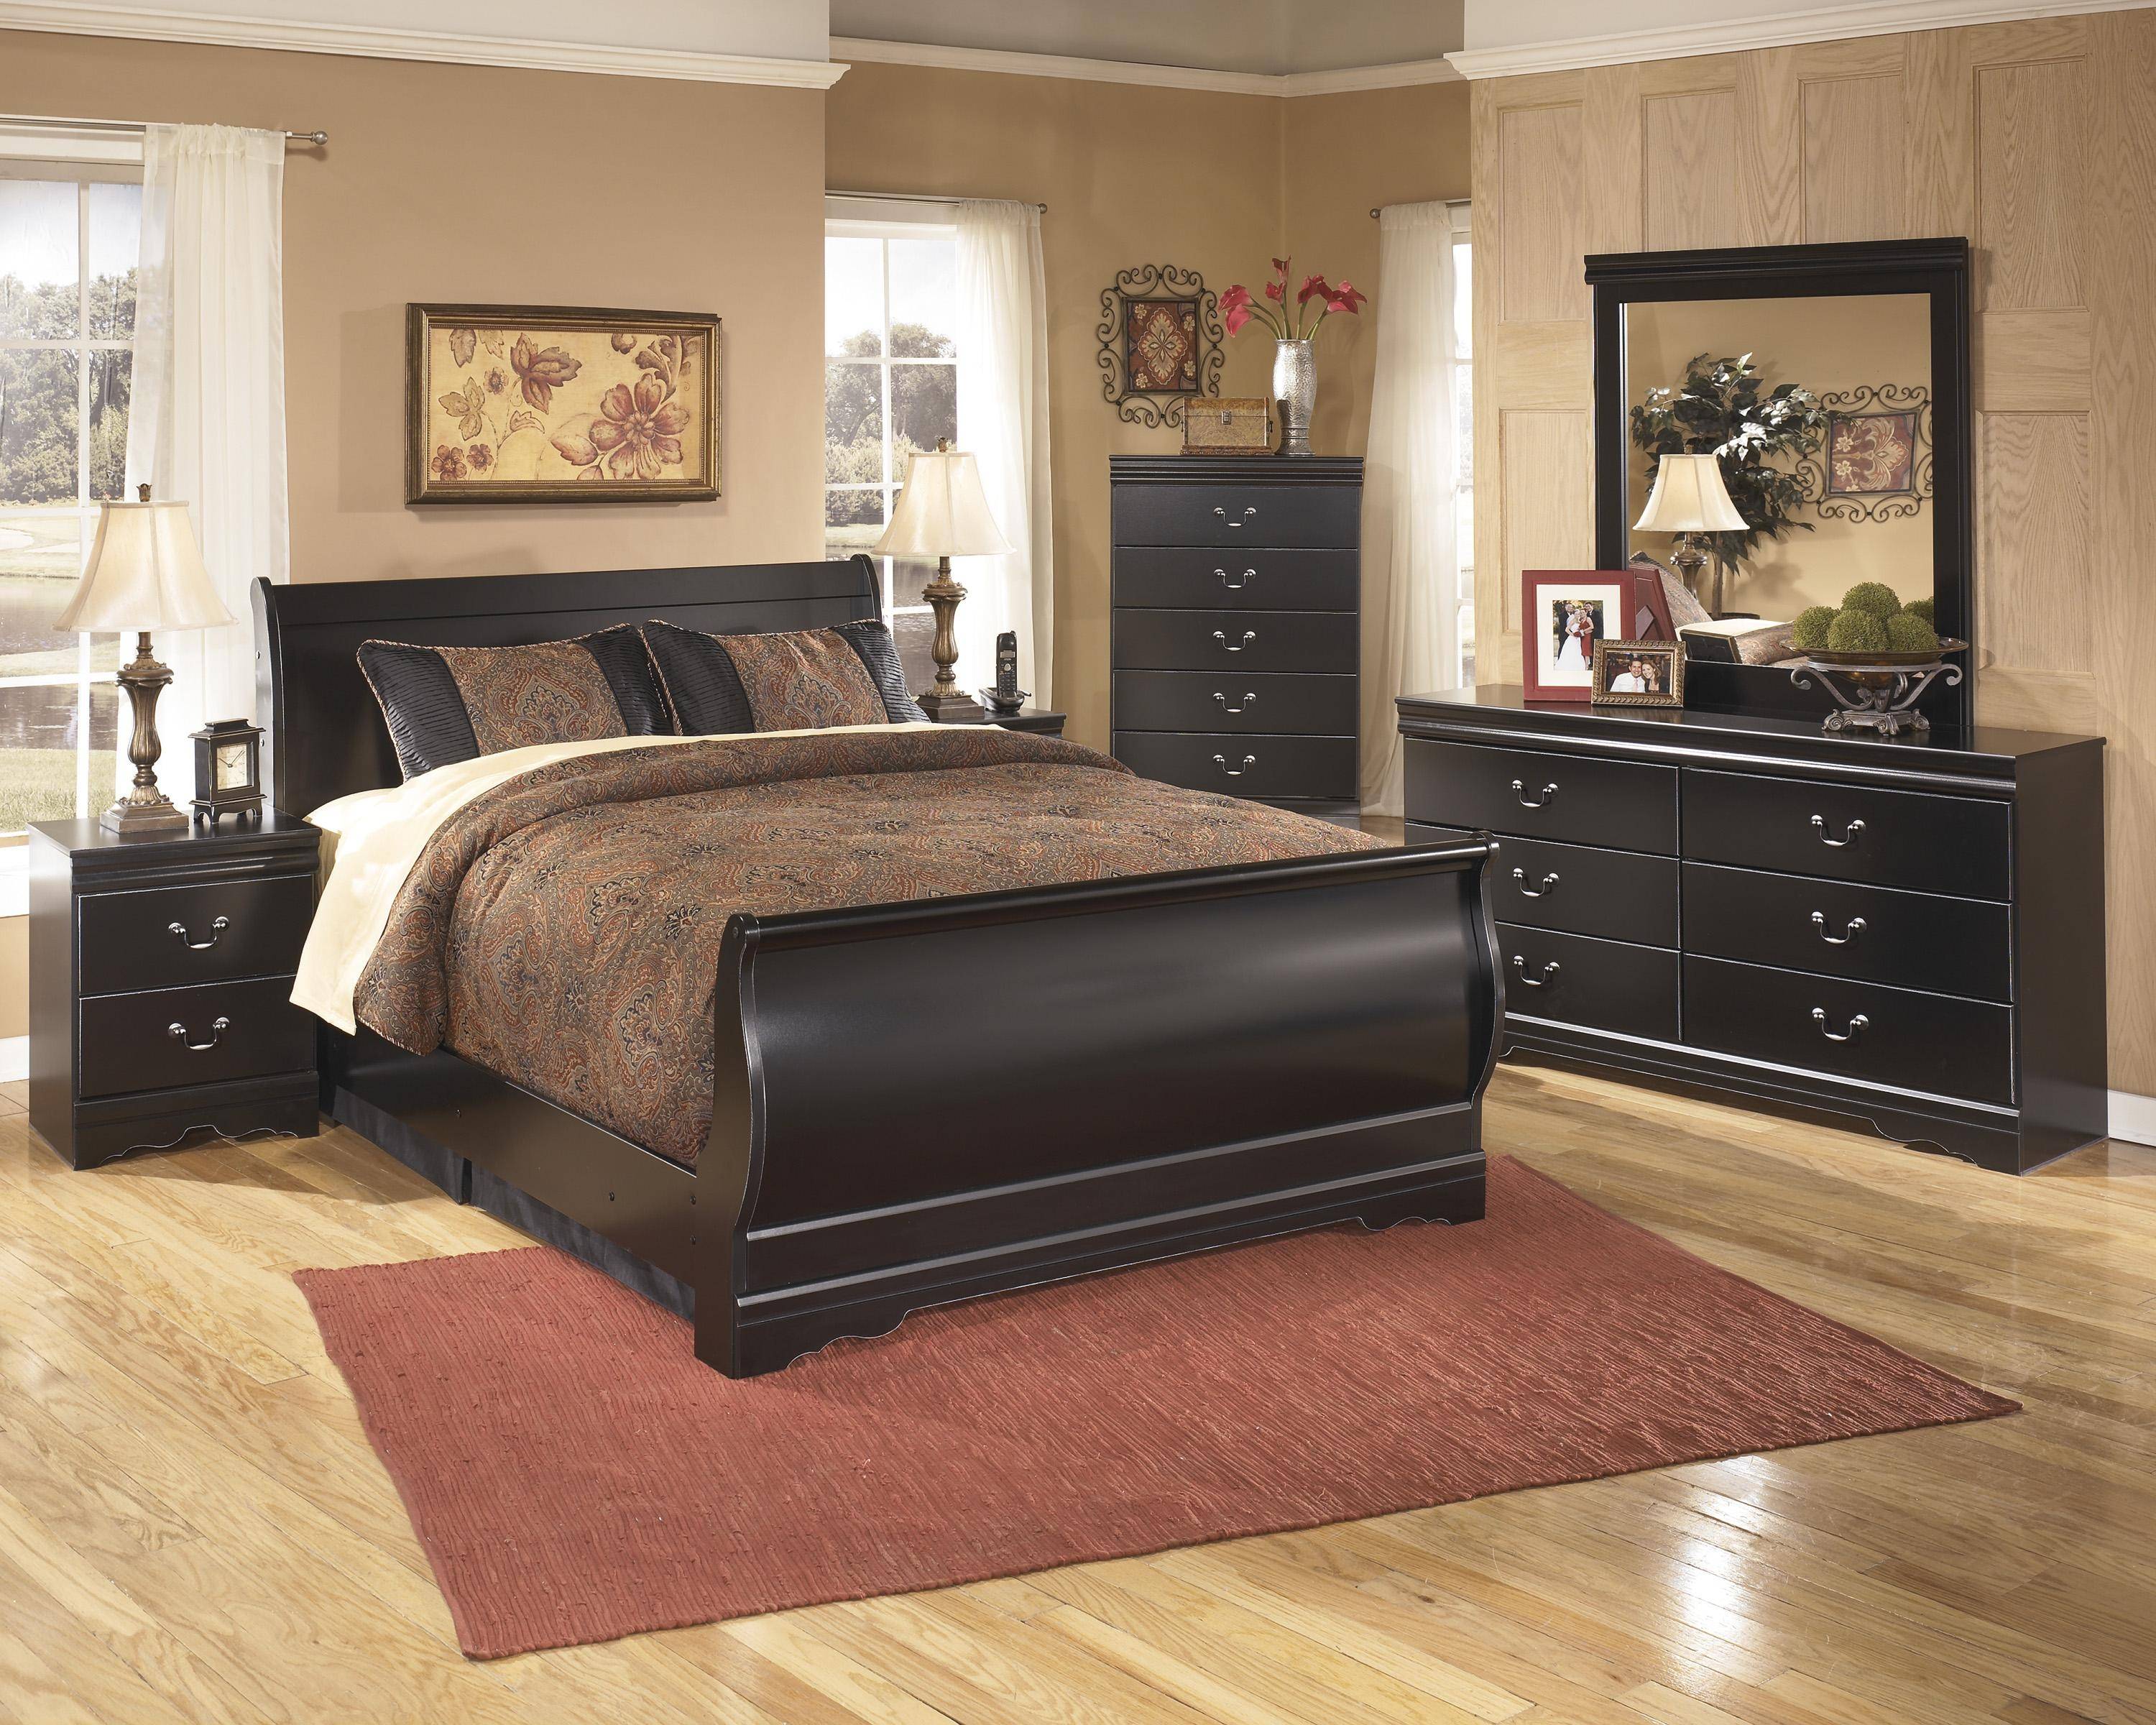 Buy Ashley Huey Vineyard Queen Sleigh Bedroom Set 6 Pcs in Black, Wood